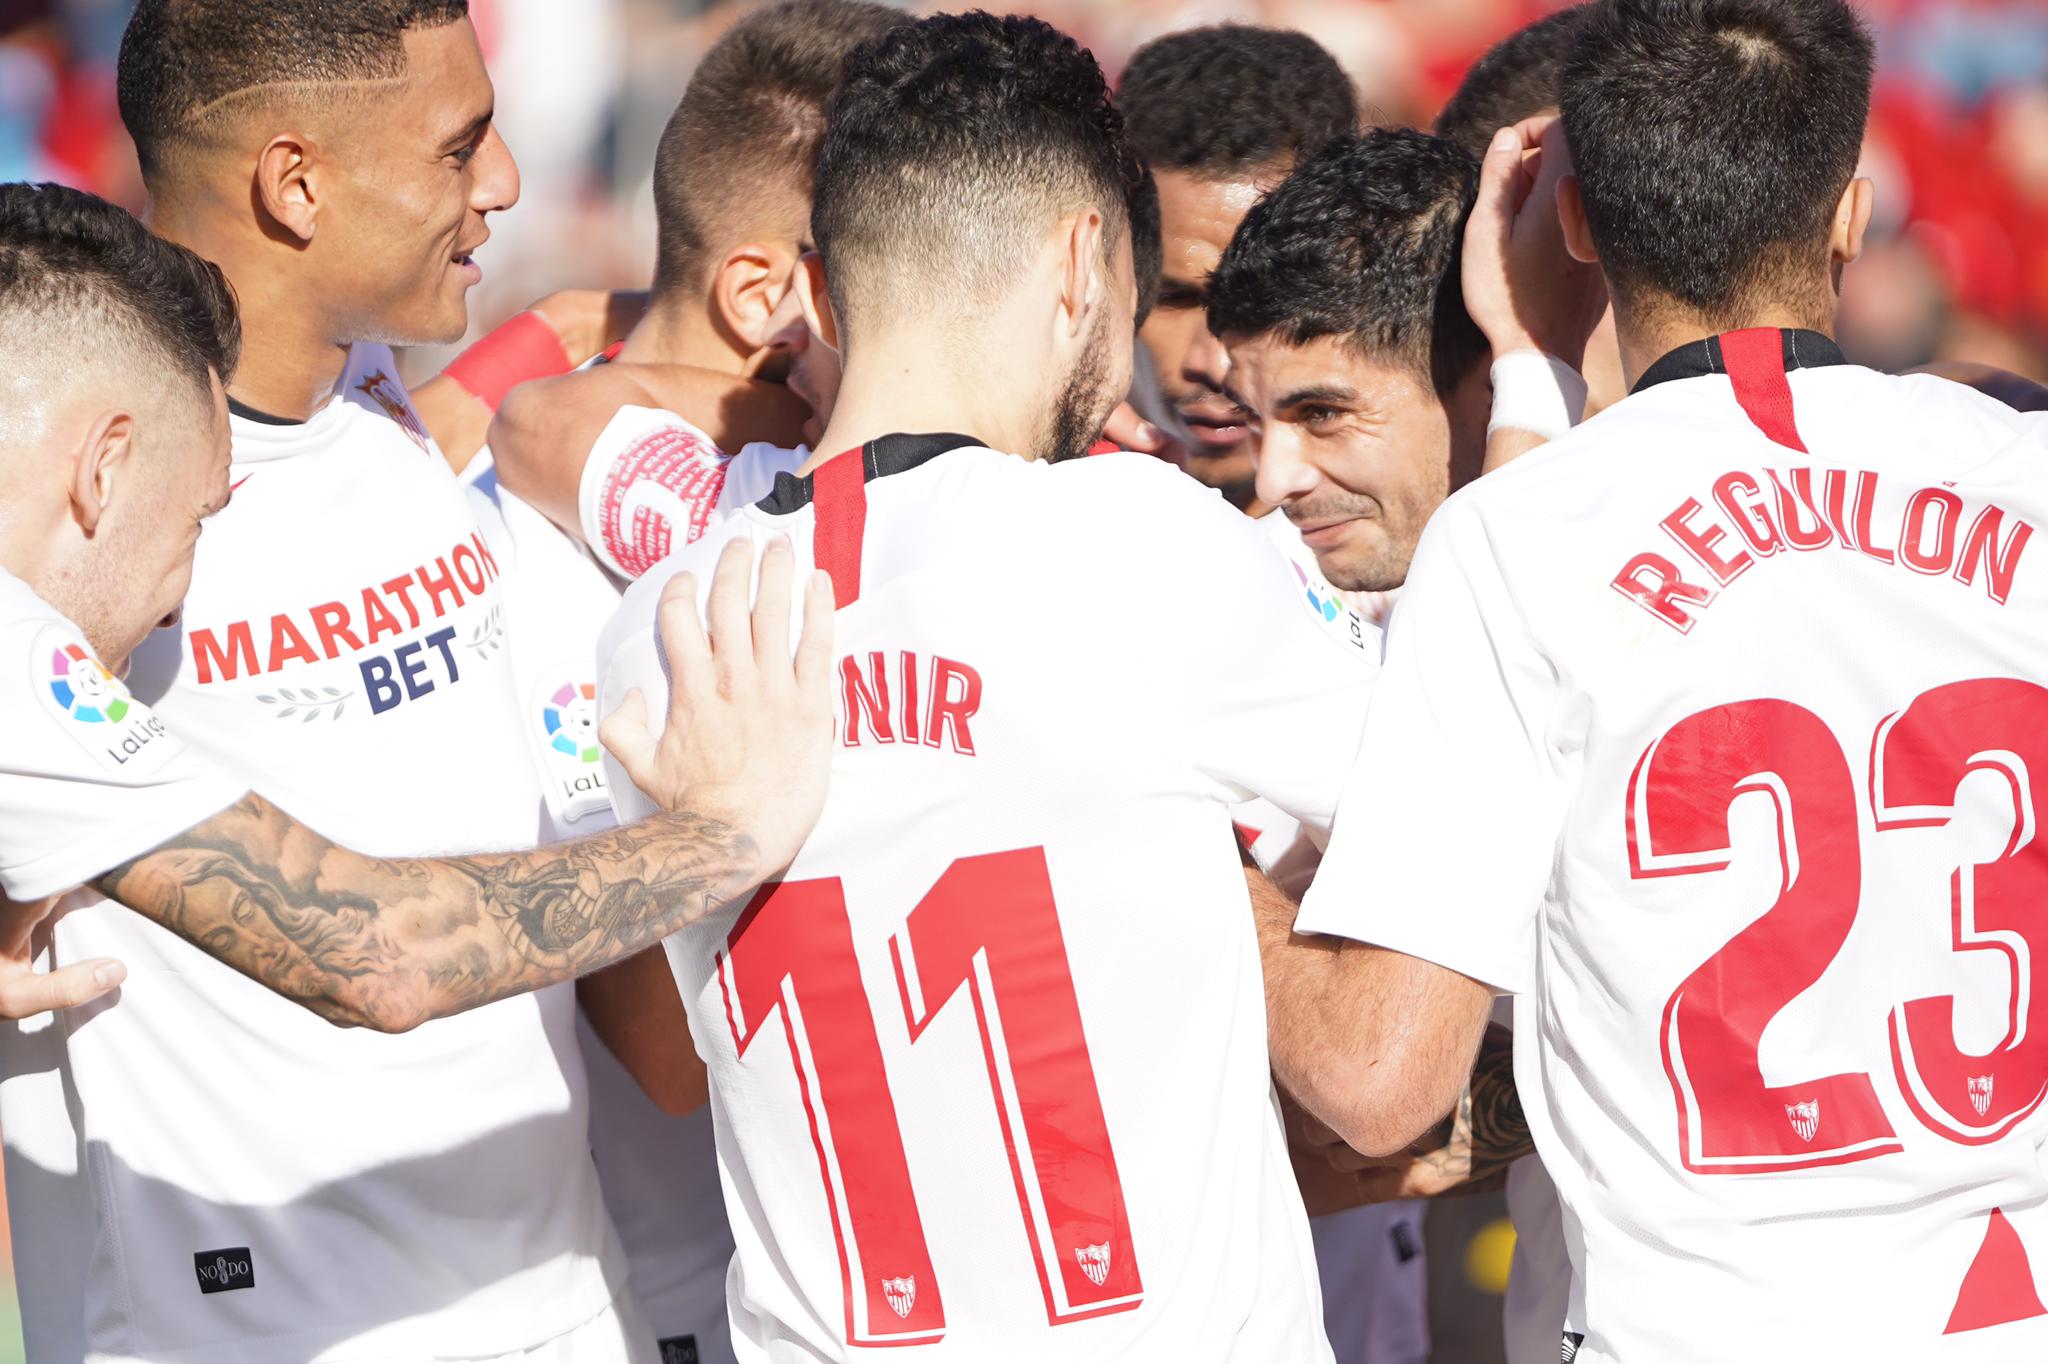 Sevilla FC celebrate their victory in Mallorca